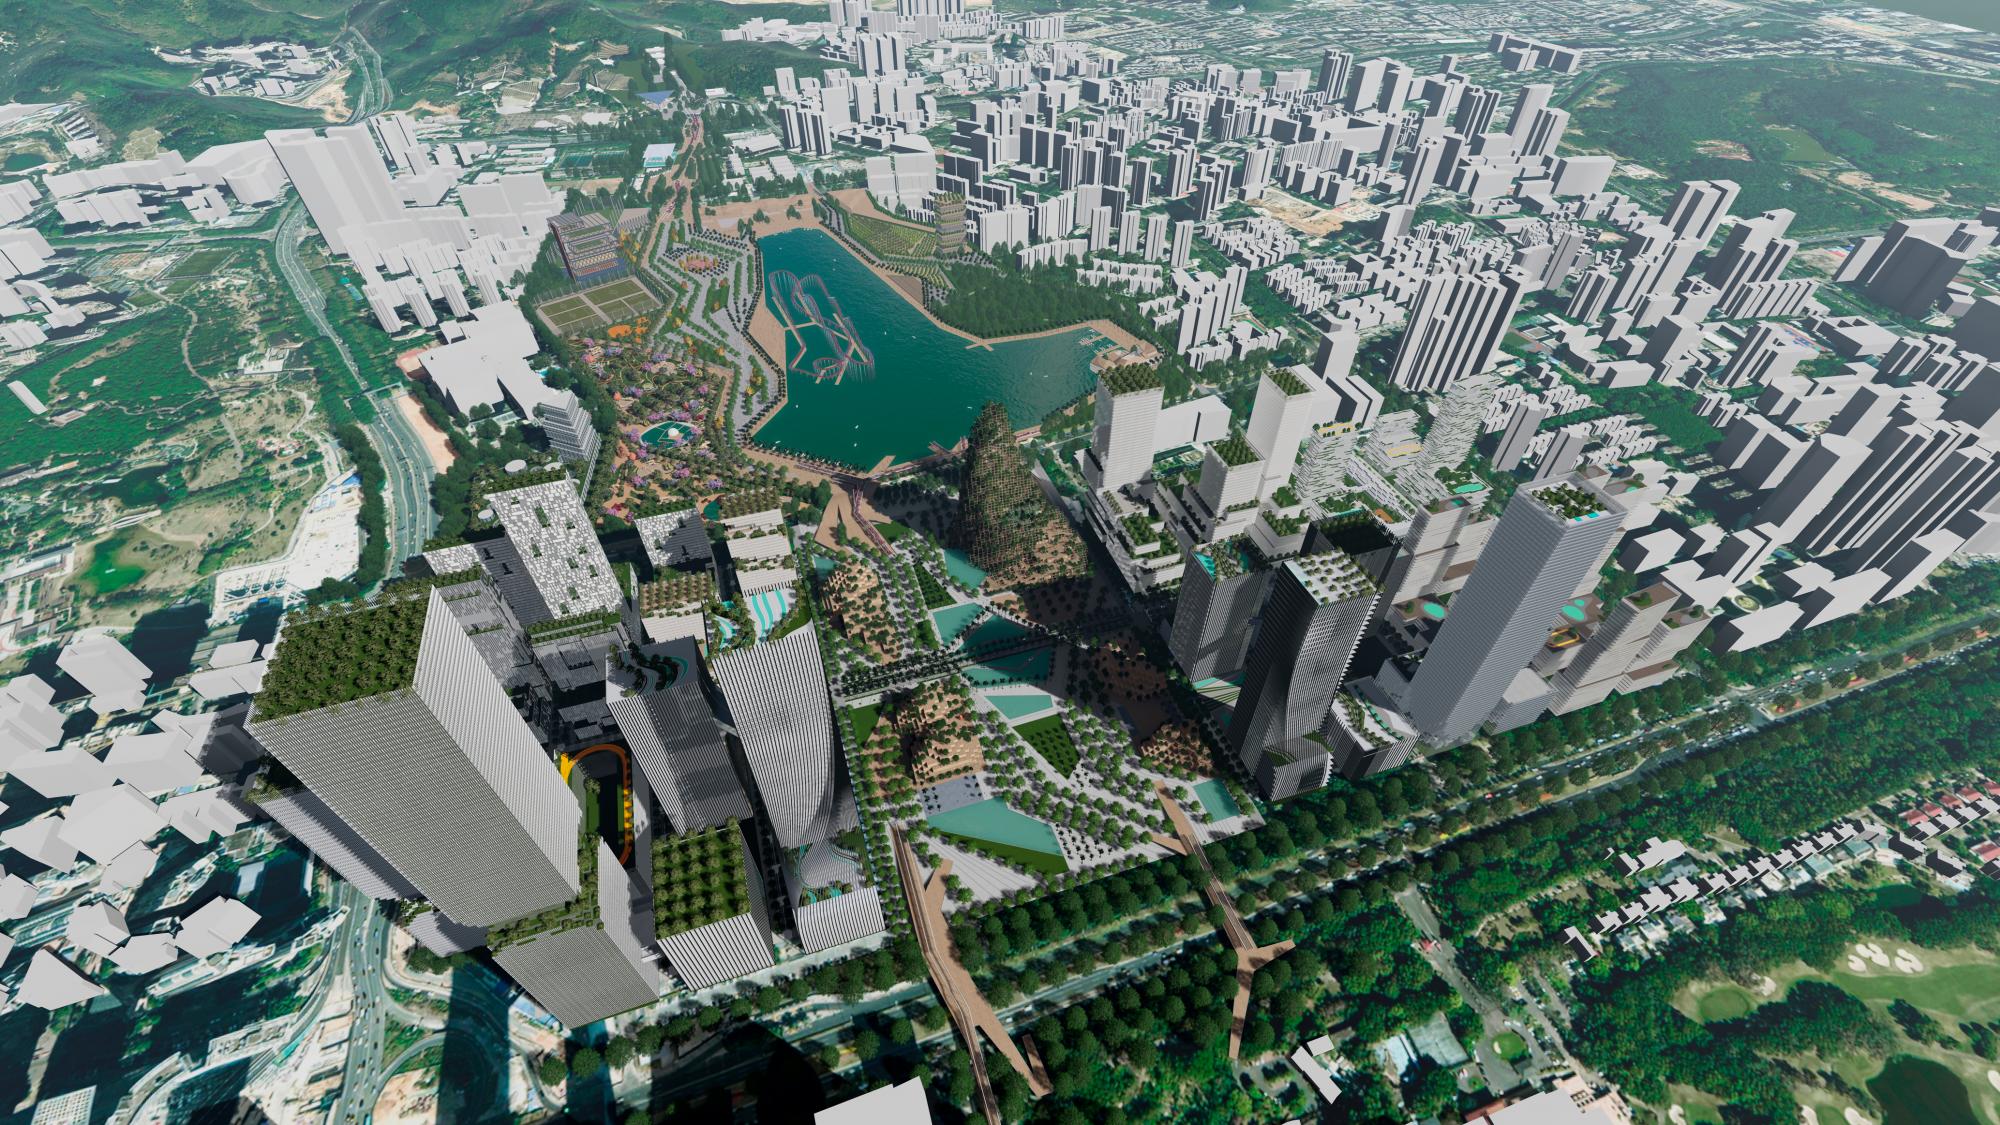 El nuevo distrito de Shenzhen, la nueva San Francisco china, comenzará a construirse en 2020 .